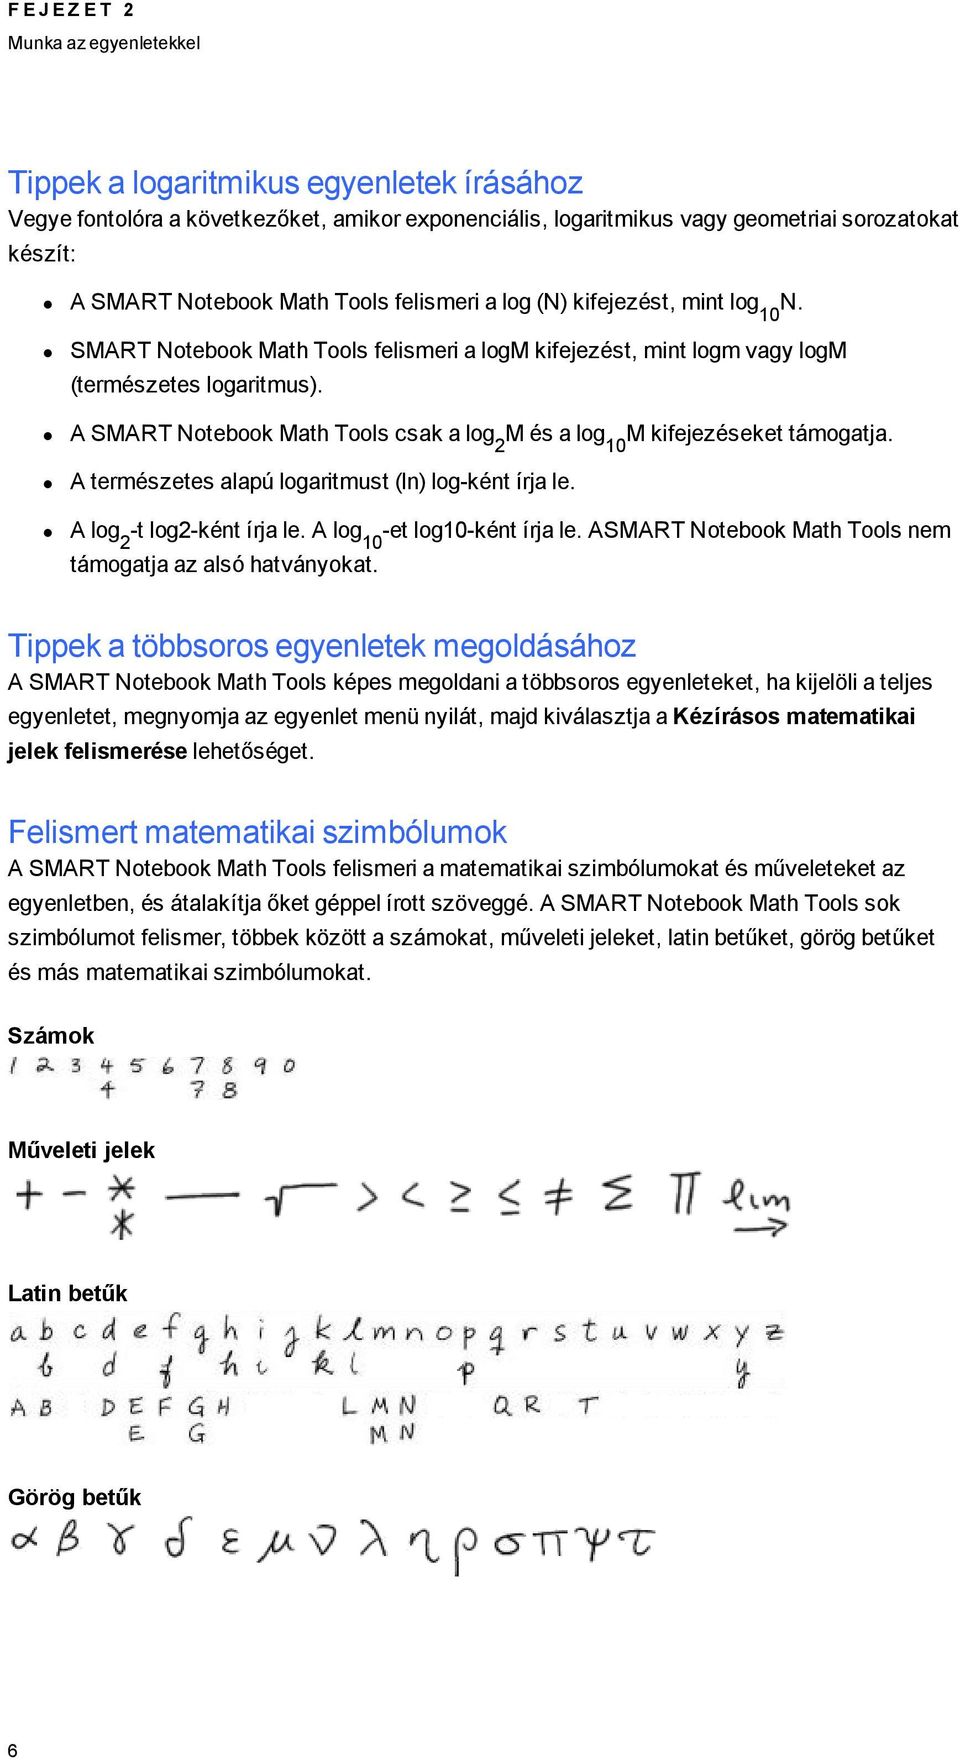 A SMART Notebook Math Tools csak a lo 2 M és a lo 10 M kifejezéseket támoatja. A természetes alapú loaritmust (ln) lo-ként írja le. A lo 2 -t lo2-ként írja le. A lo 10 -et lo10-ként írja le.